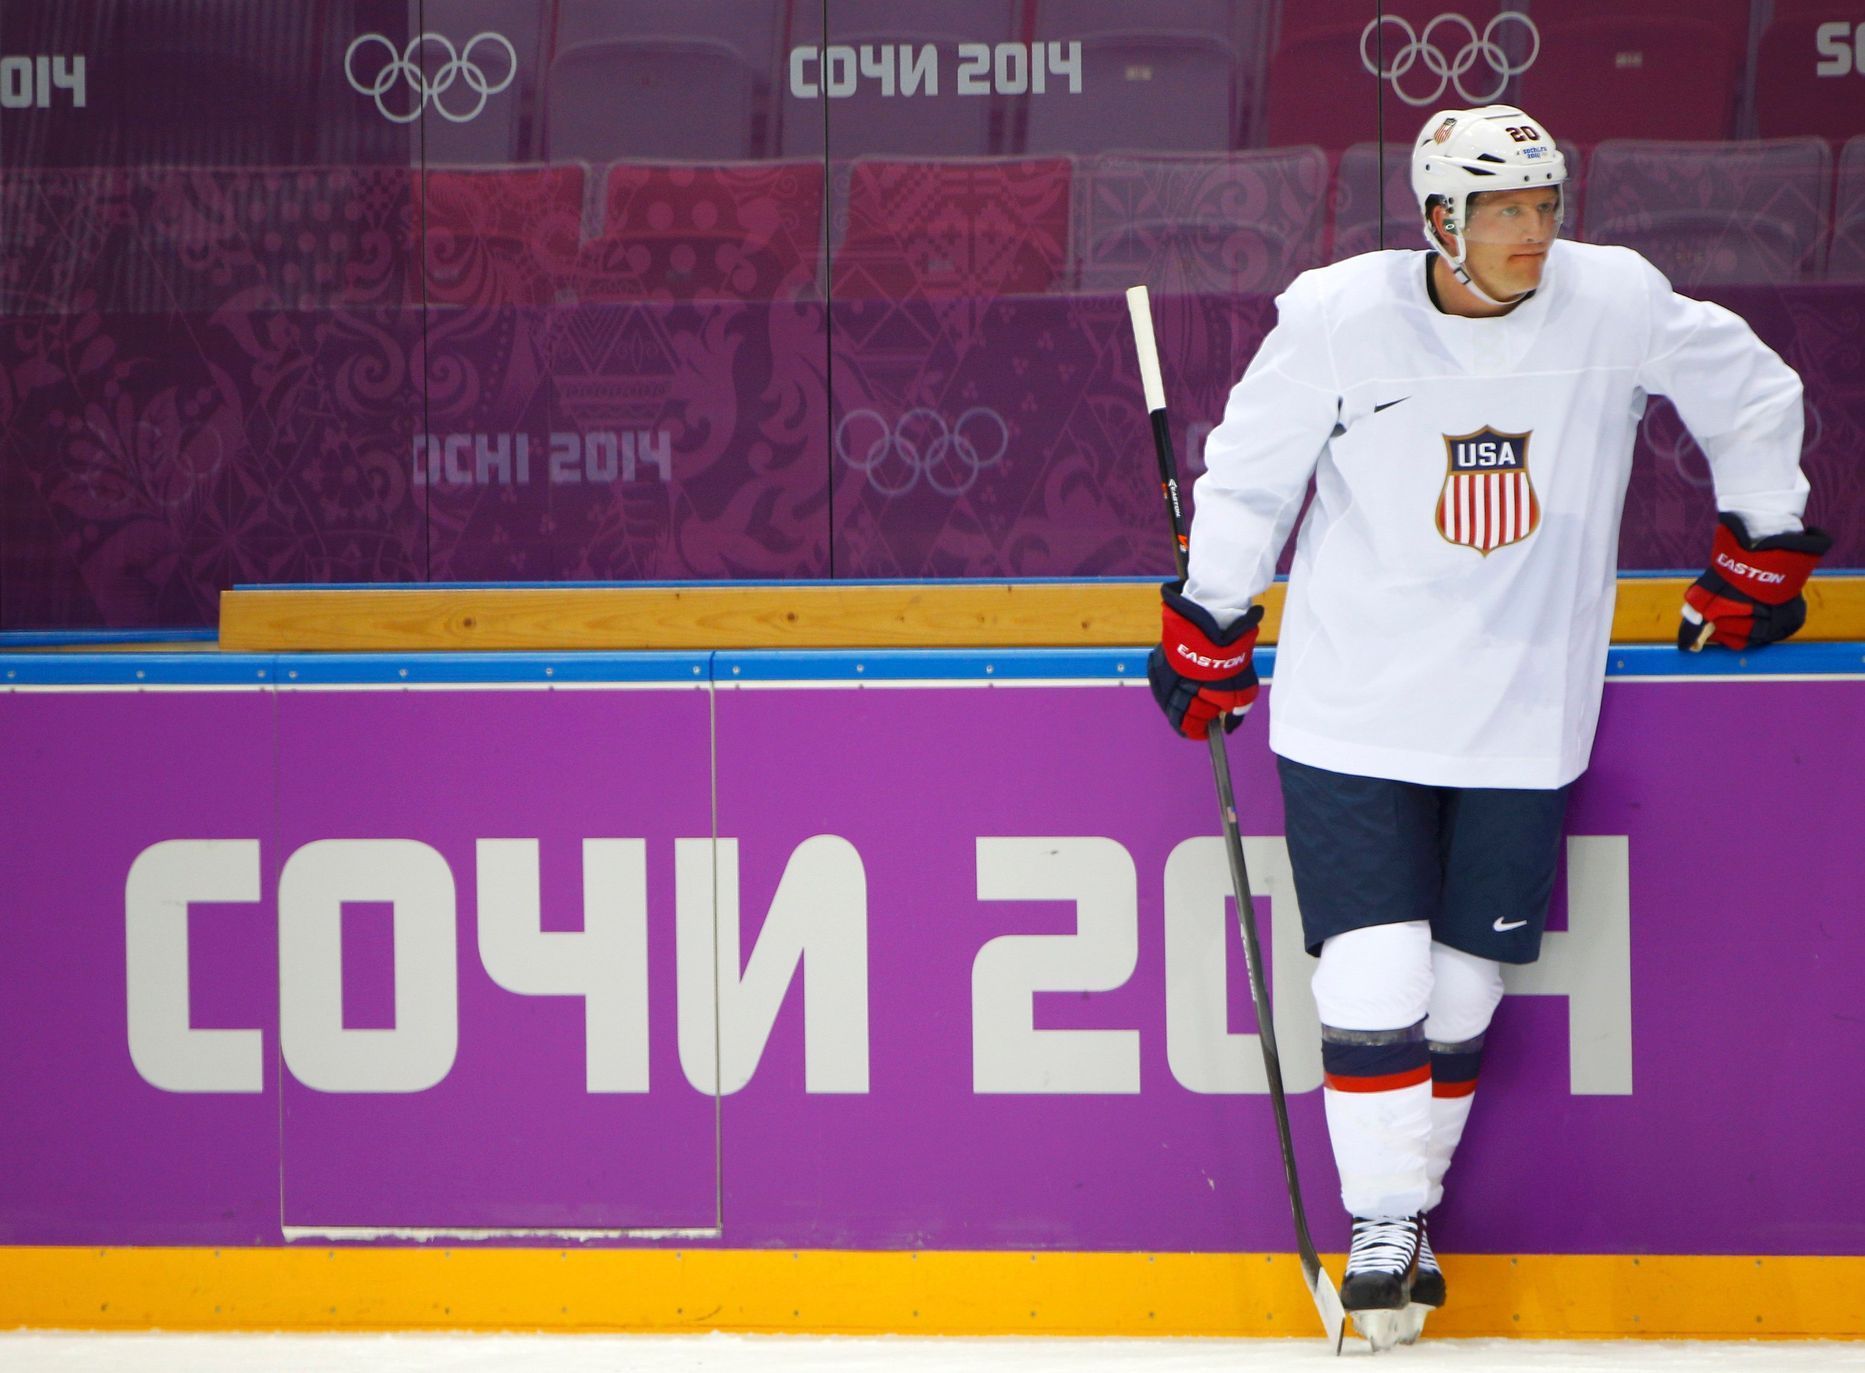 Soči 2014, hokej, USA: Ryan Suter